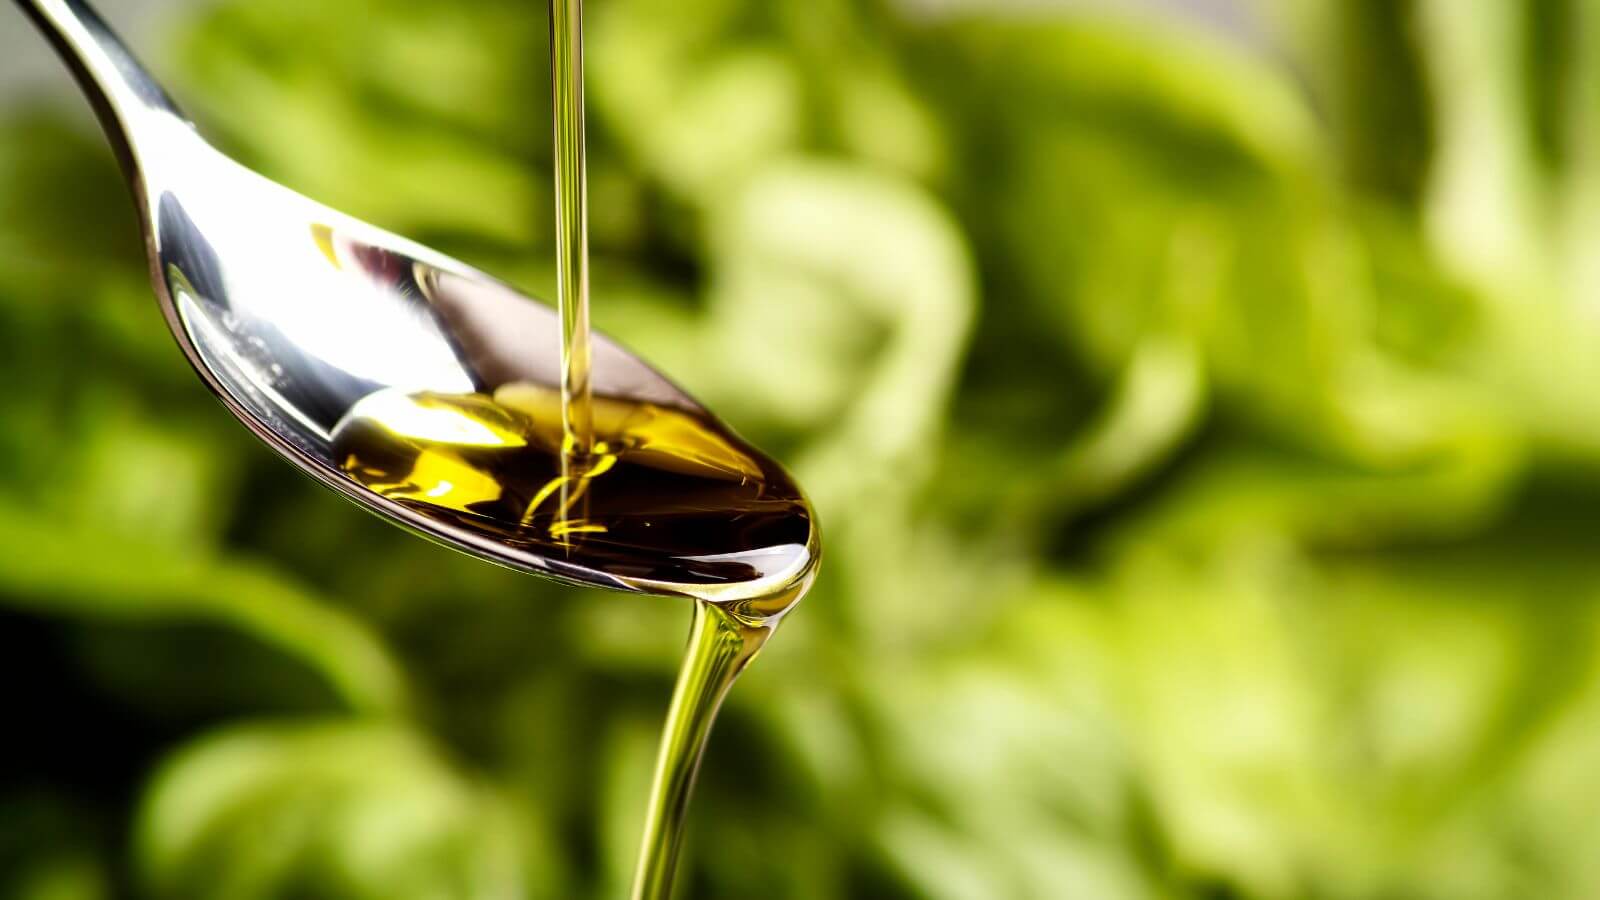 Come rimuovere i residui di colla delle etichette adesive con l'olio extravergine di oliva